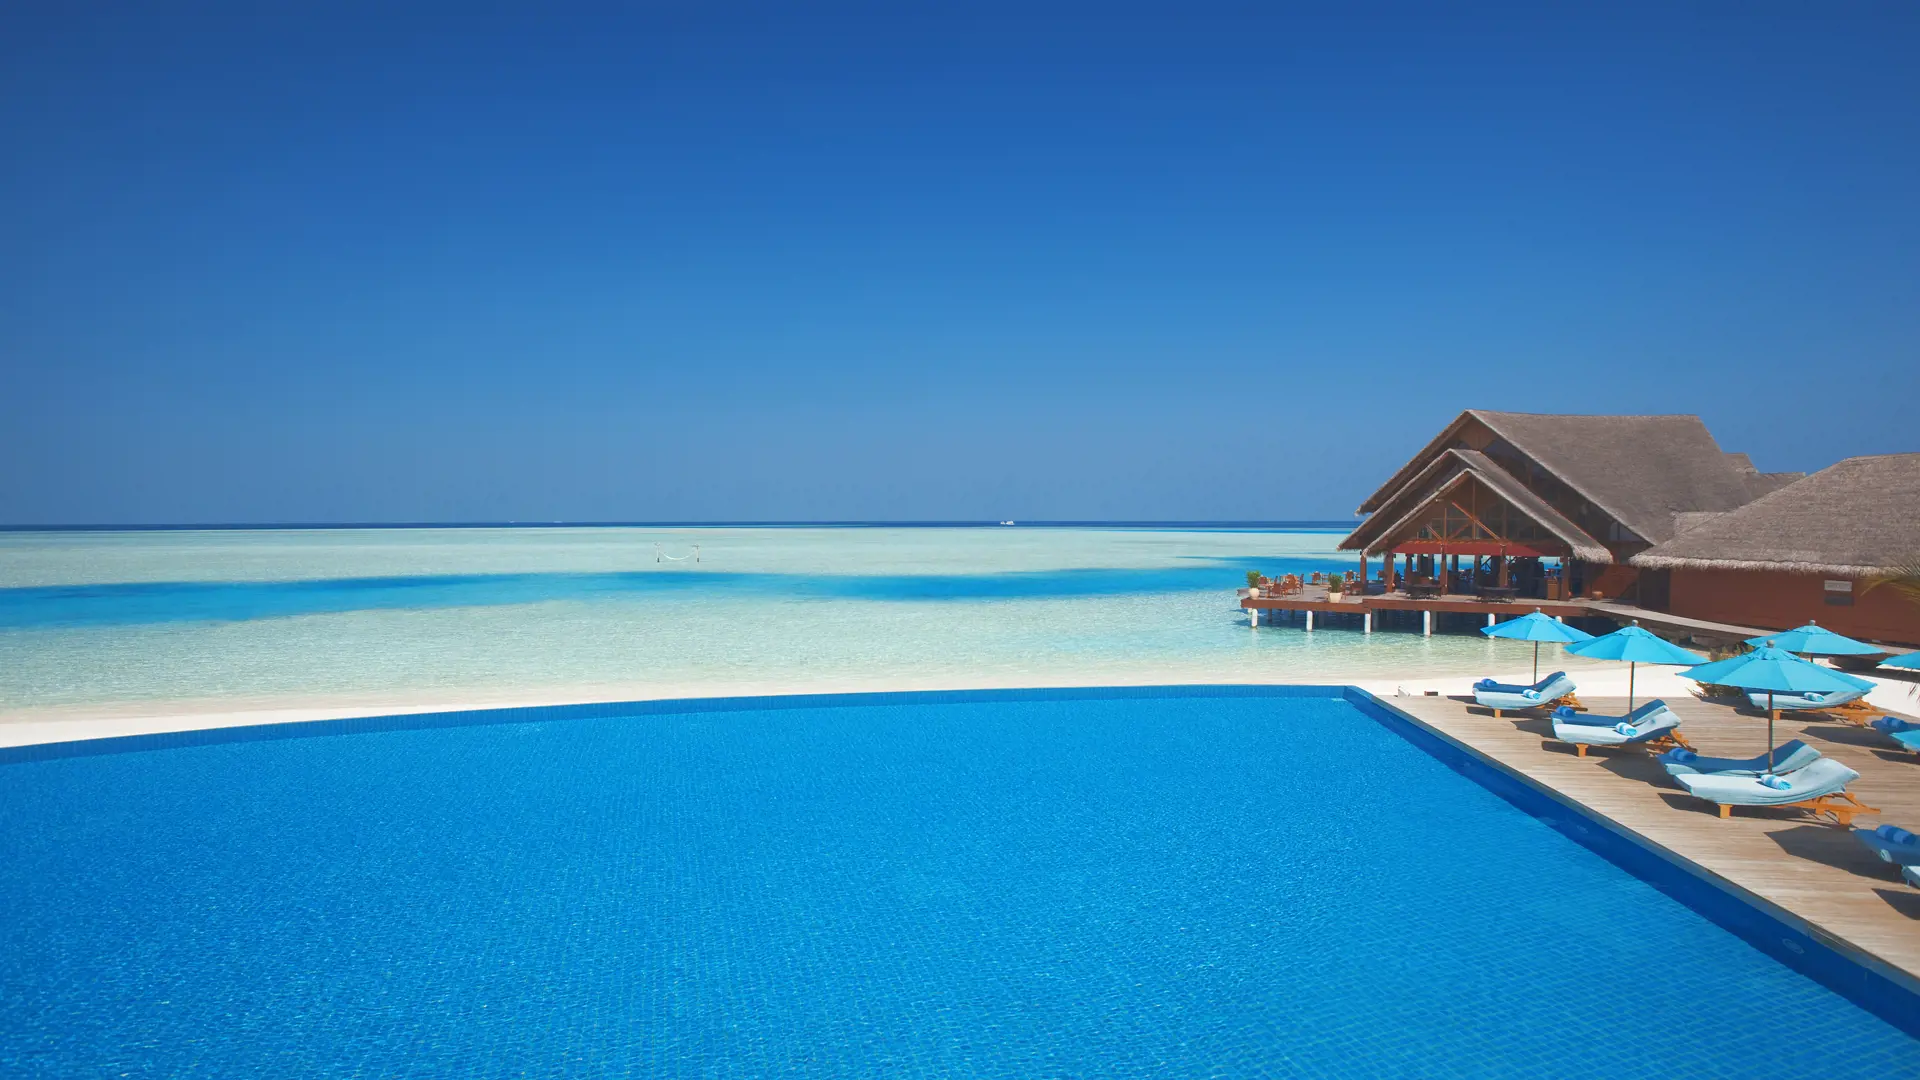 POOL ELLER HAV - På flere af vores rejser til Maldiverne kan I både for pool og krystalklart hav. Kunne det ikke være okay at ligge her?